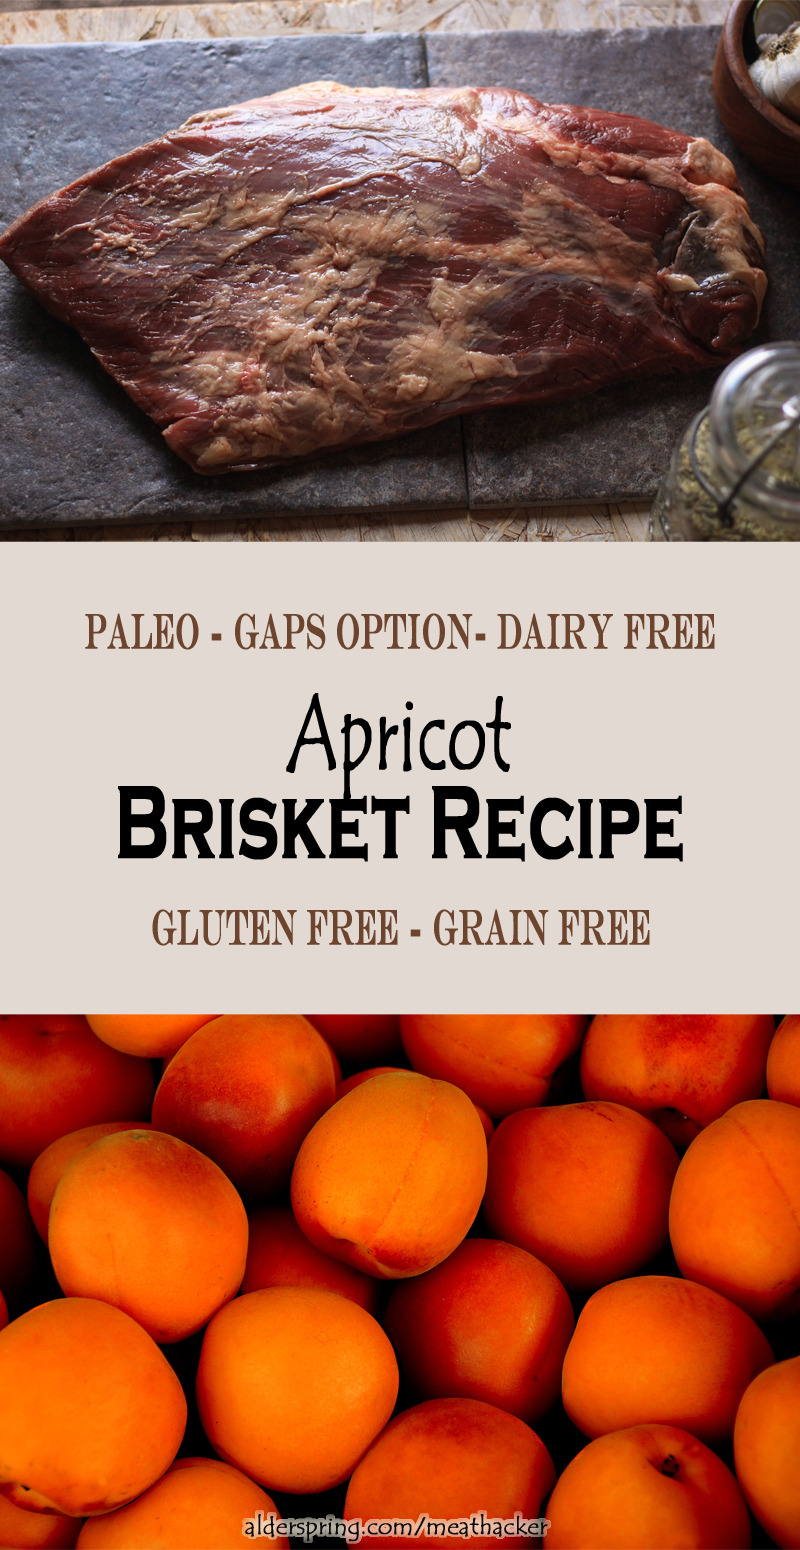 Apricot Brisket Recipe